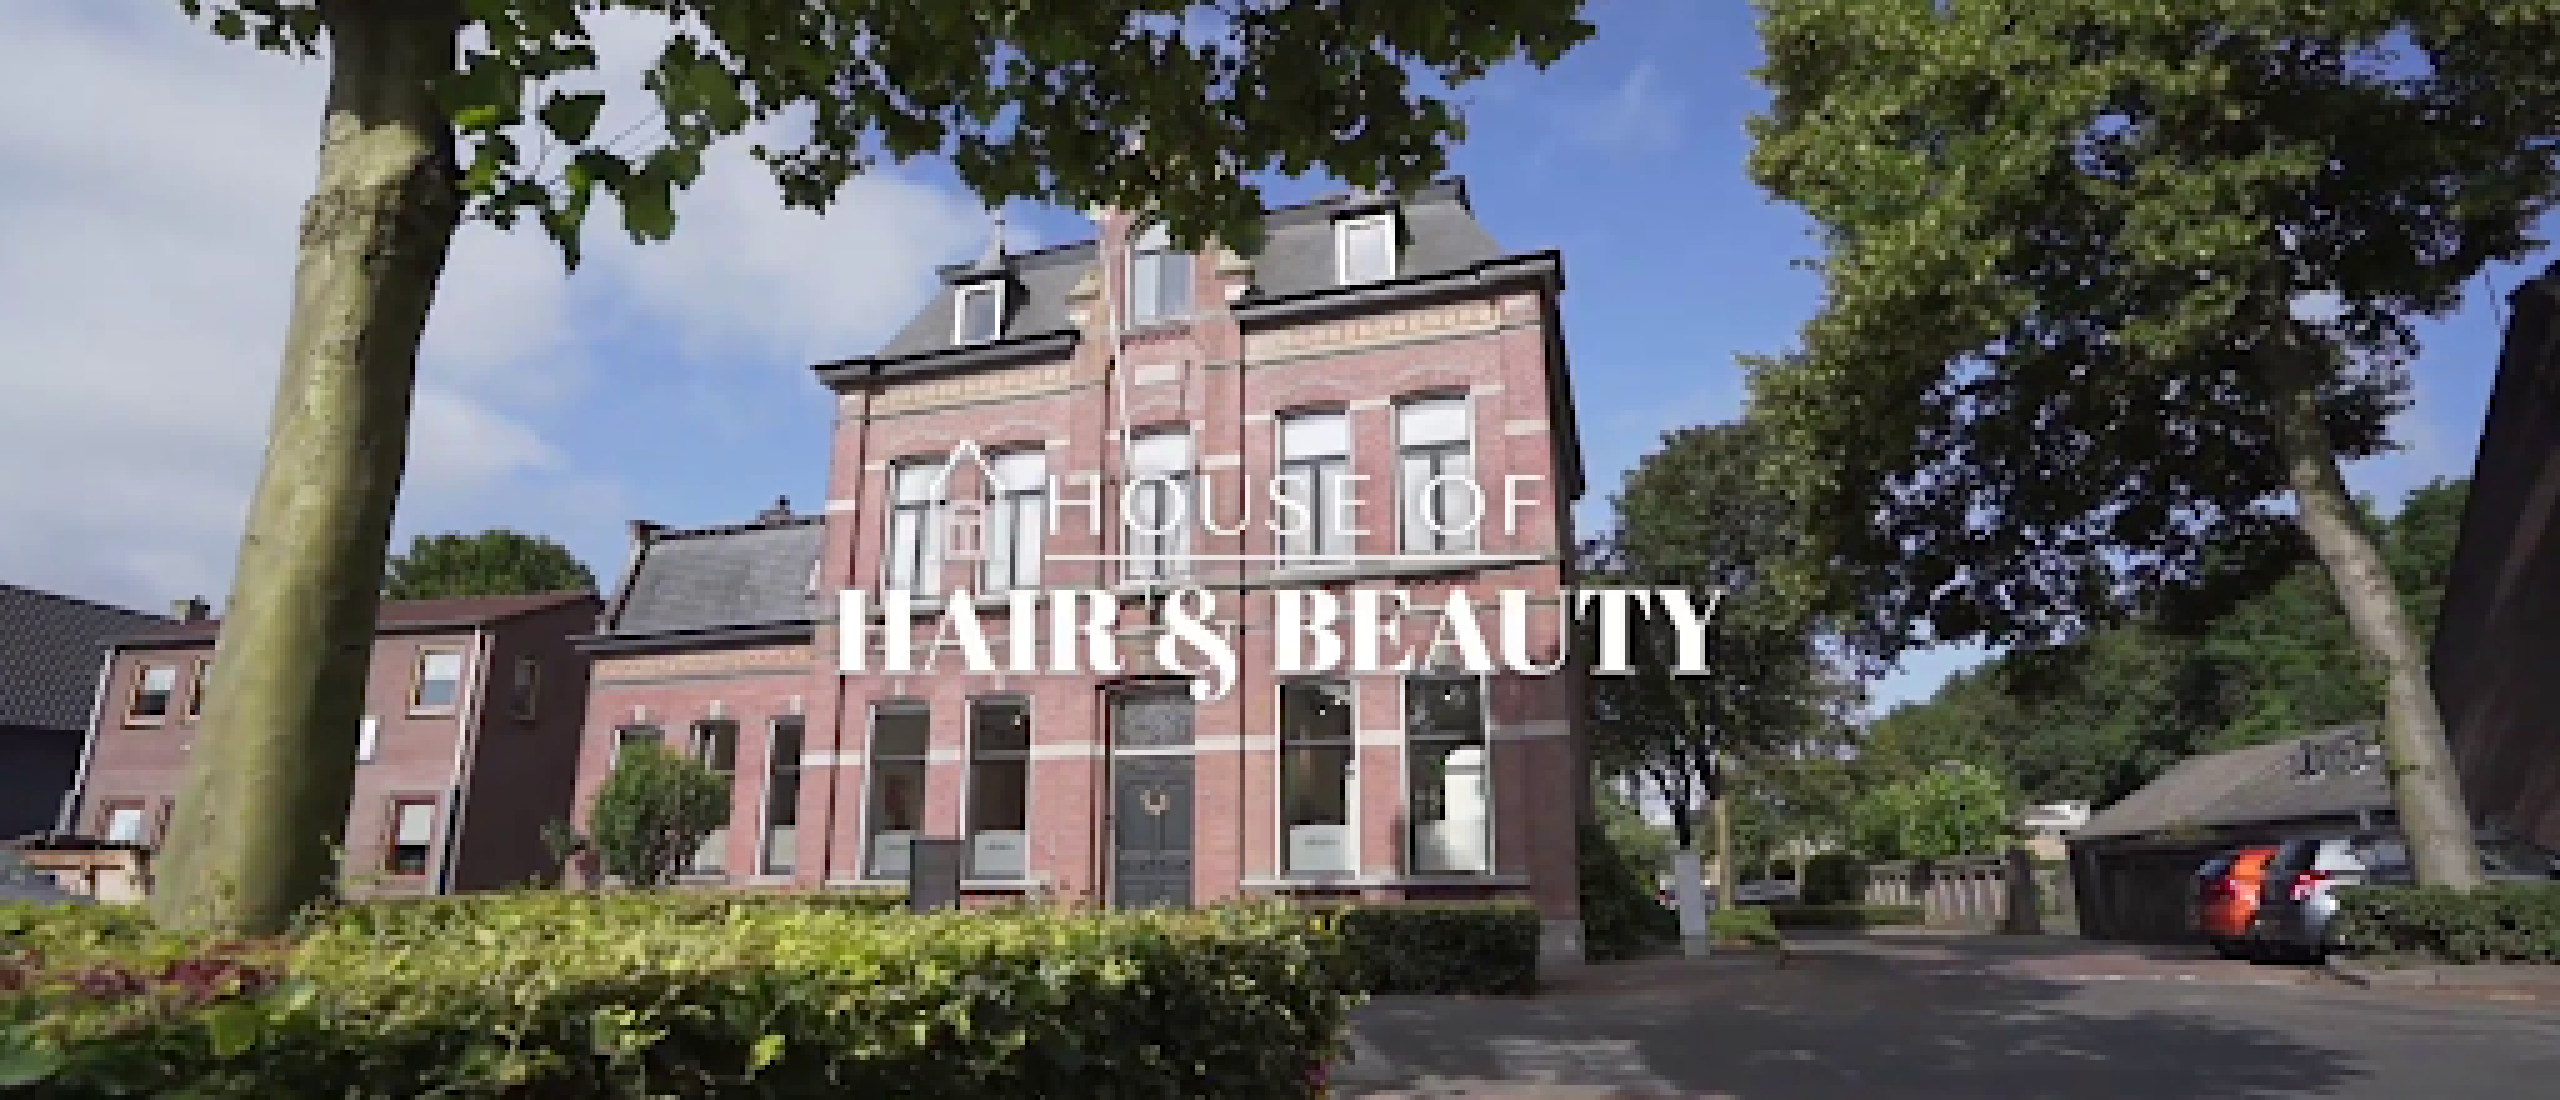 House Of Hair & Beauty: Dé expert in persoonlijke haarbehandelingen en natuurlijke schoonheid